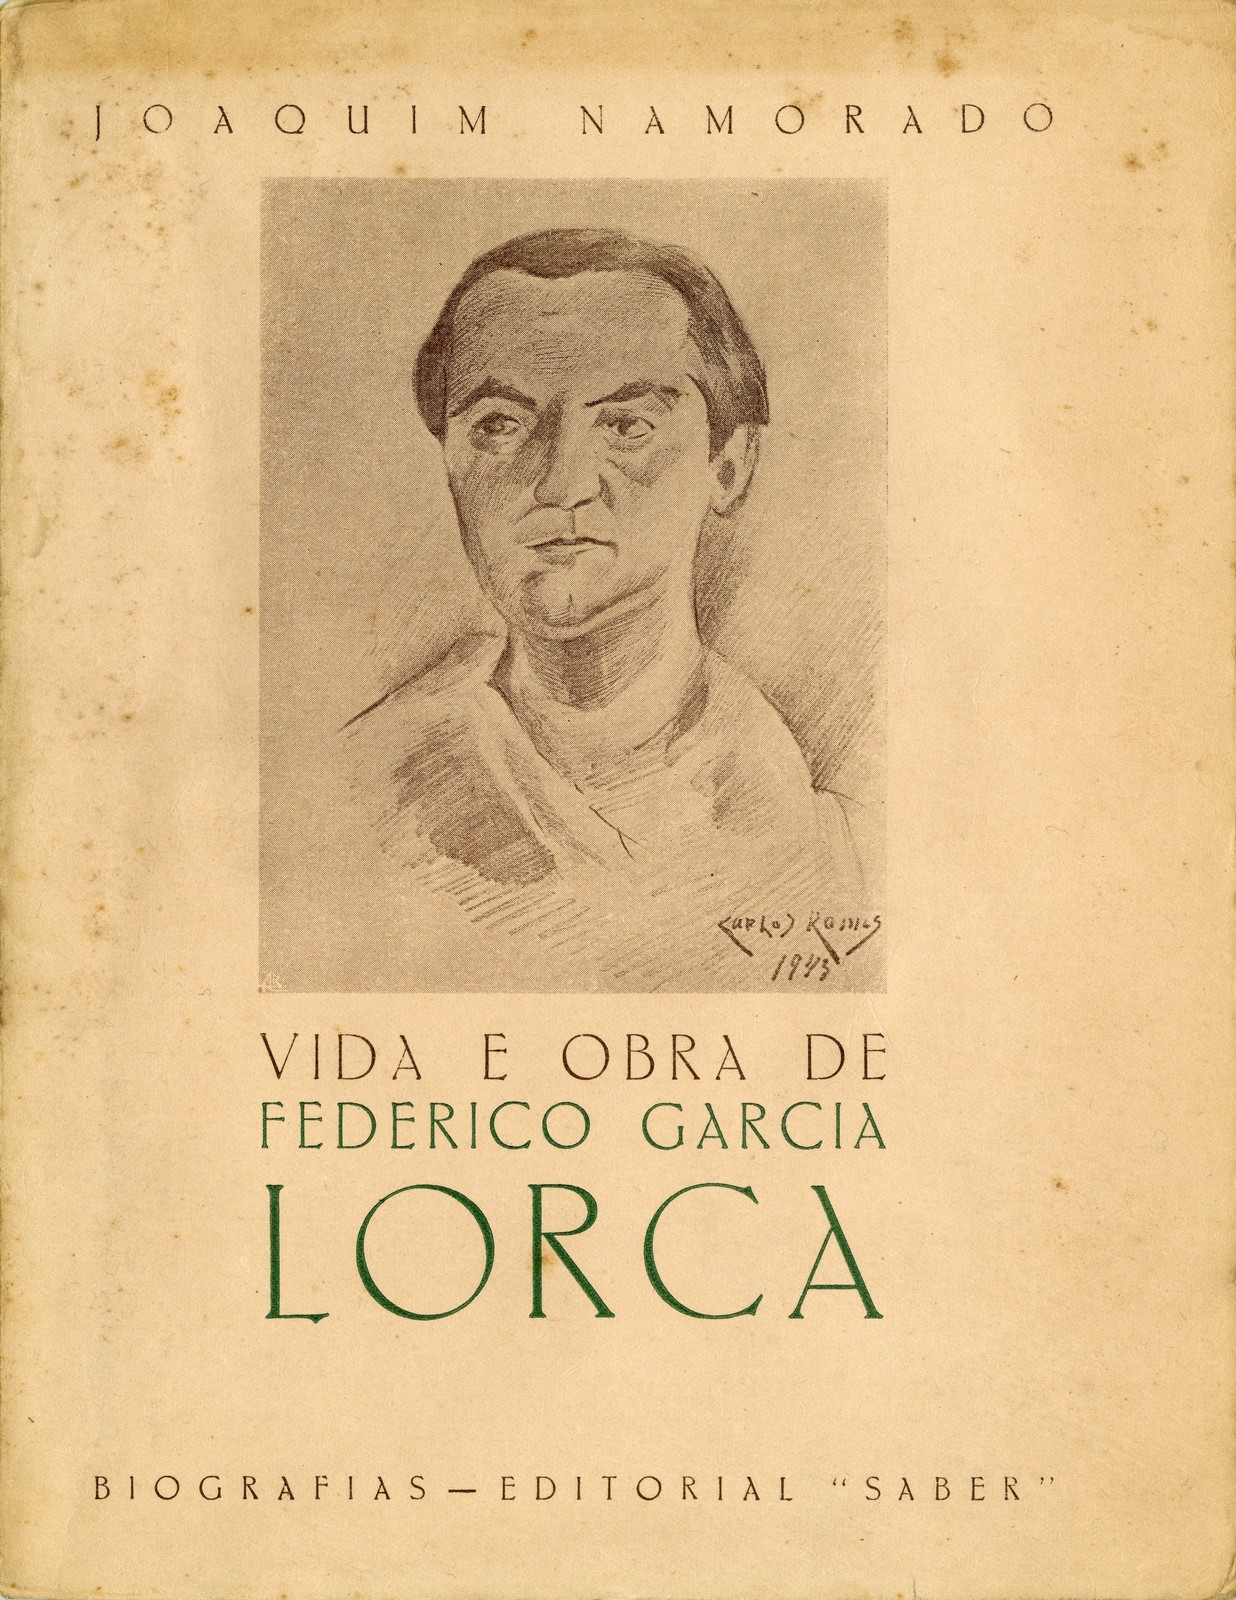 'Vida e obra de Federico Garcia Lorca', por Joaquim Namorado. Coimbra: Coimbra Editora, 1943.